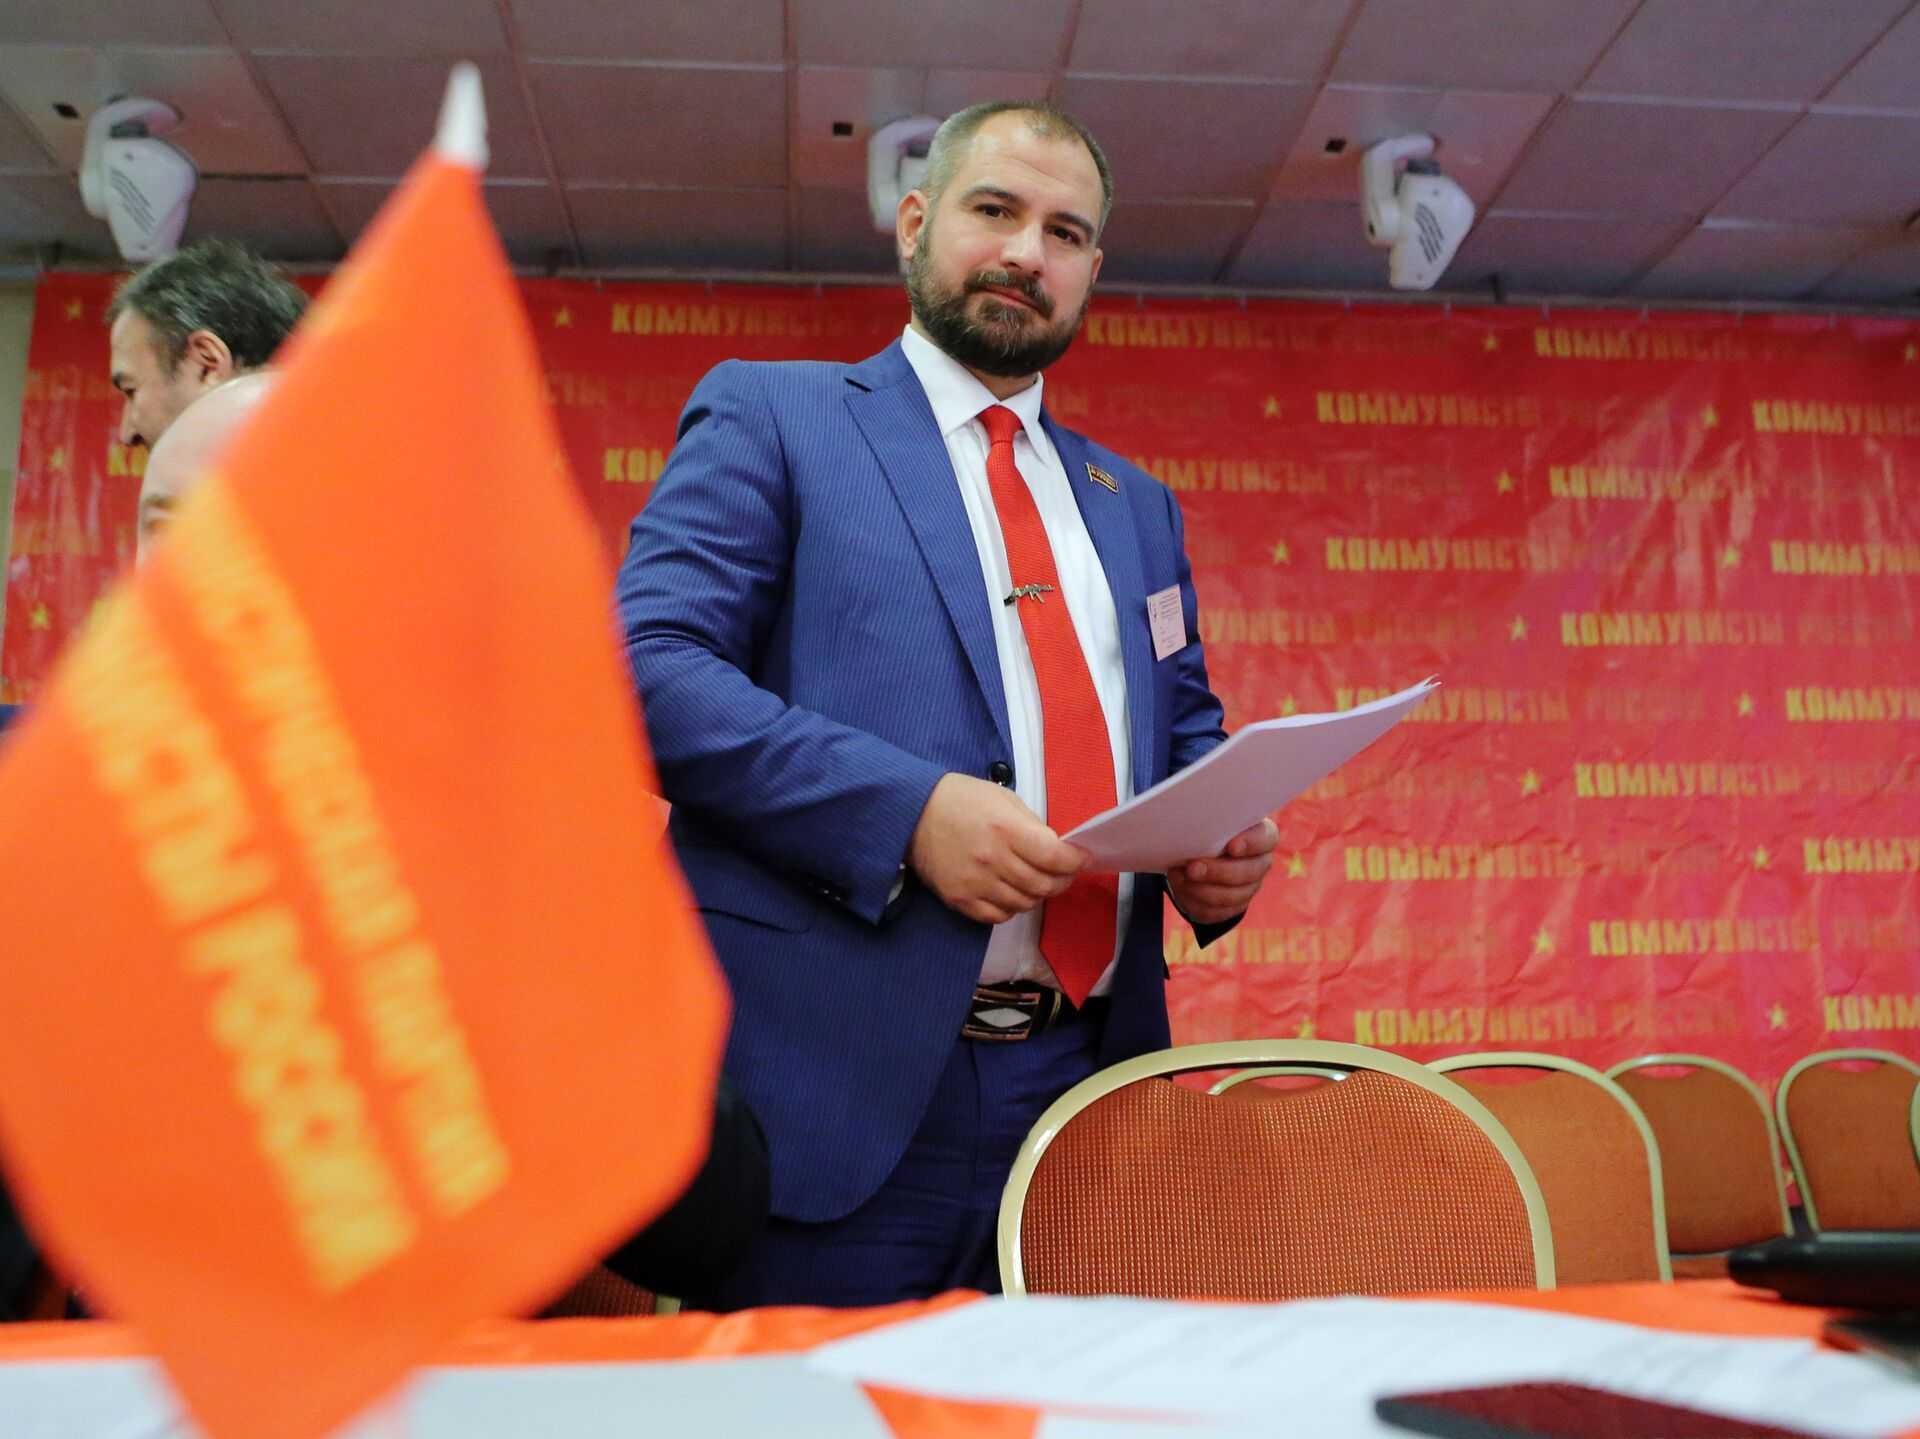 Лидер партии коммунисты россии максим сурайкин принимает участи в выборах президента рф 2018